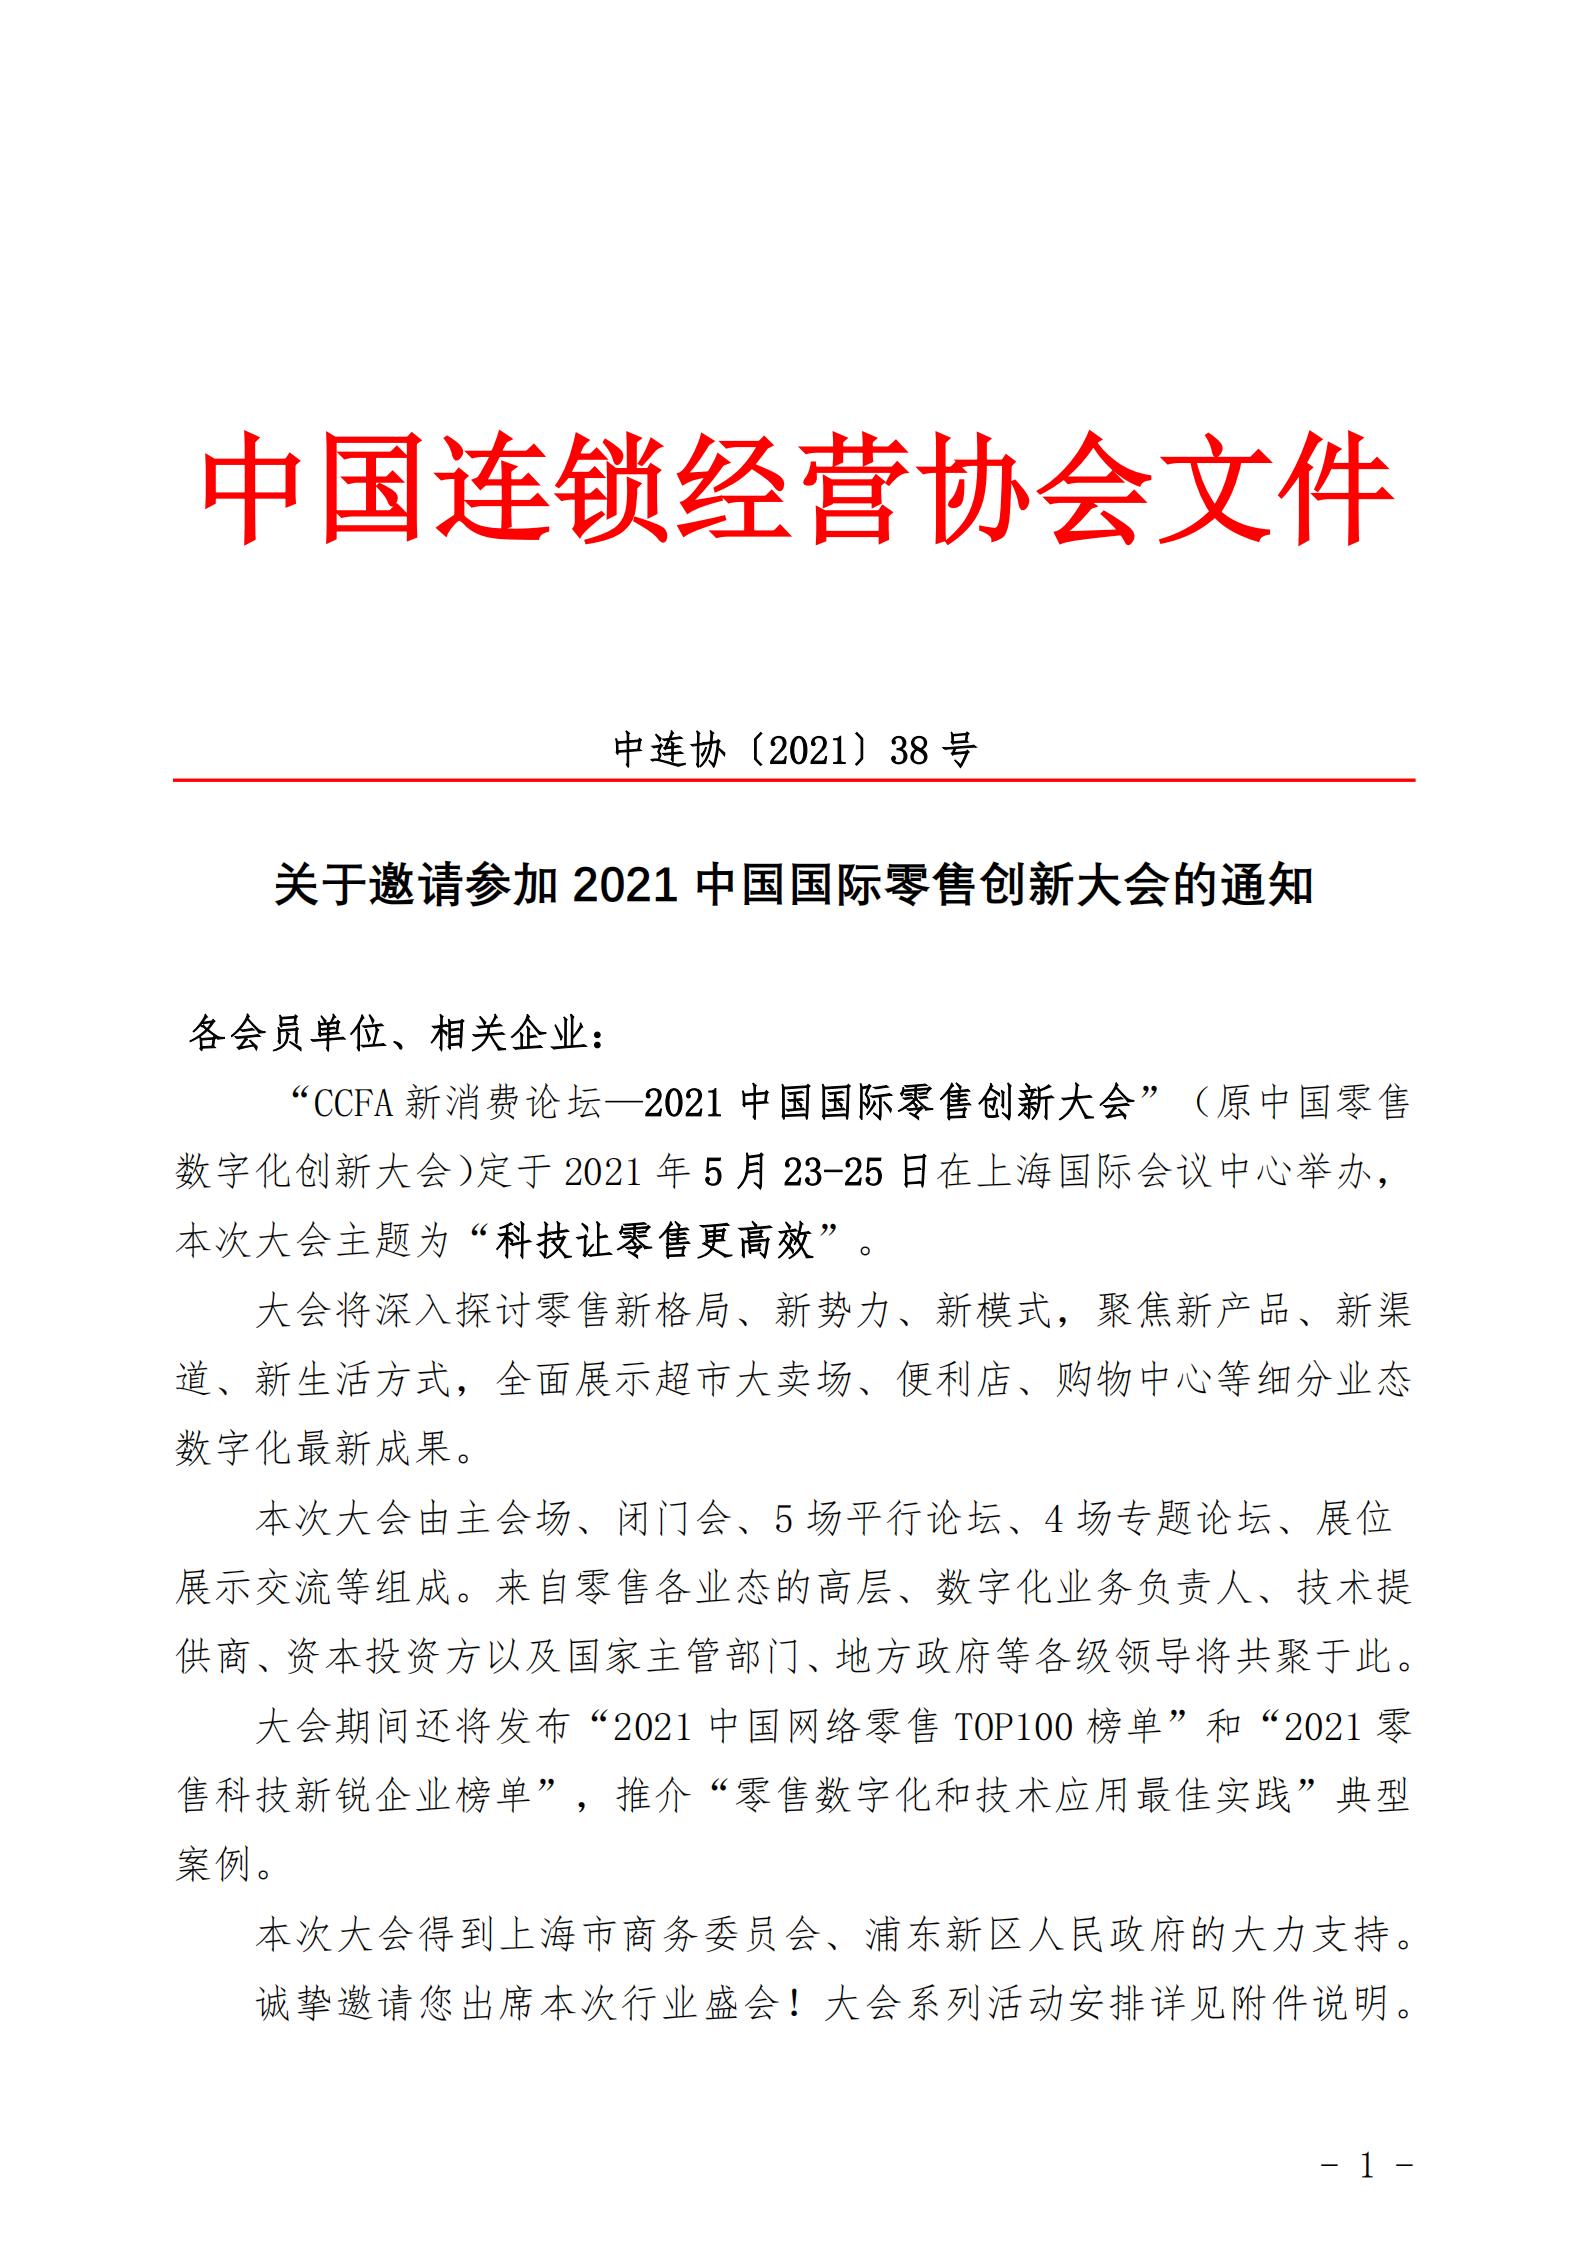 转发《关于邀请参加2021中国国际零售创新大会的通知》的函(图3)